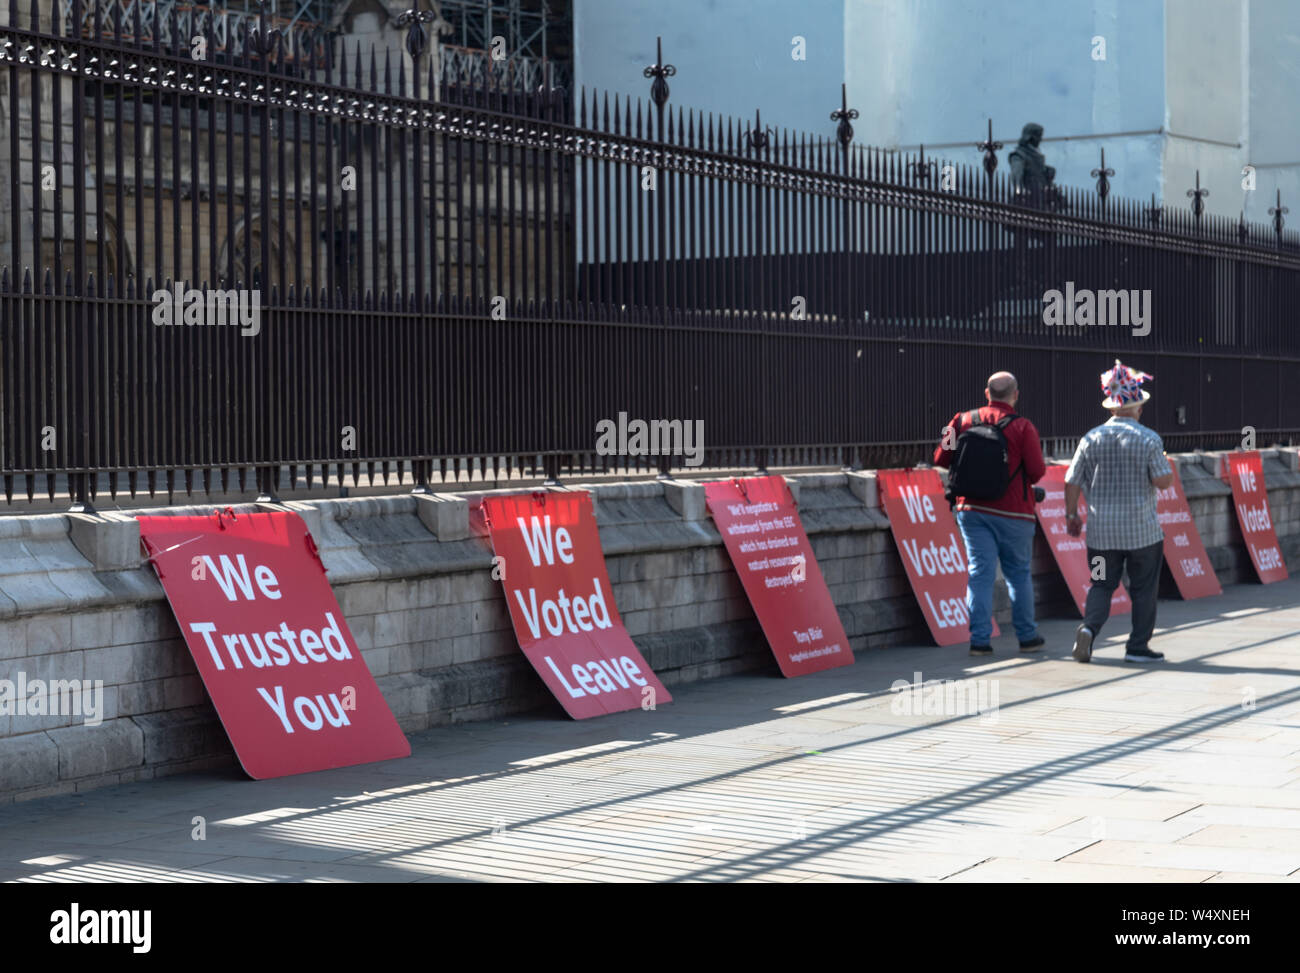 Westminster, Londres, Reino Unido 24 de julio. Votación para dejar carteles colocados a lo largo de una pared. Dos hombres caminando por una union jack vistiendo un sombrero. Foto de stock